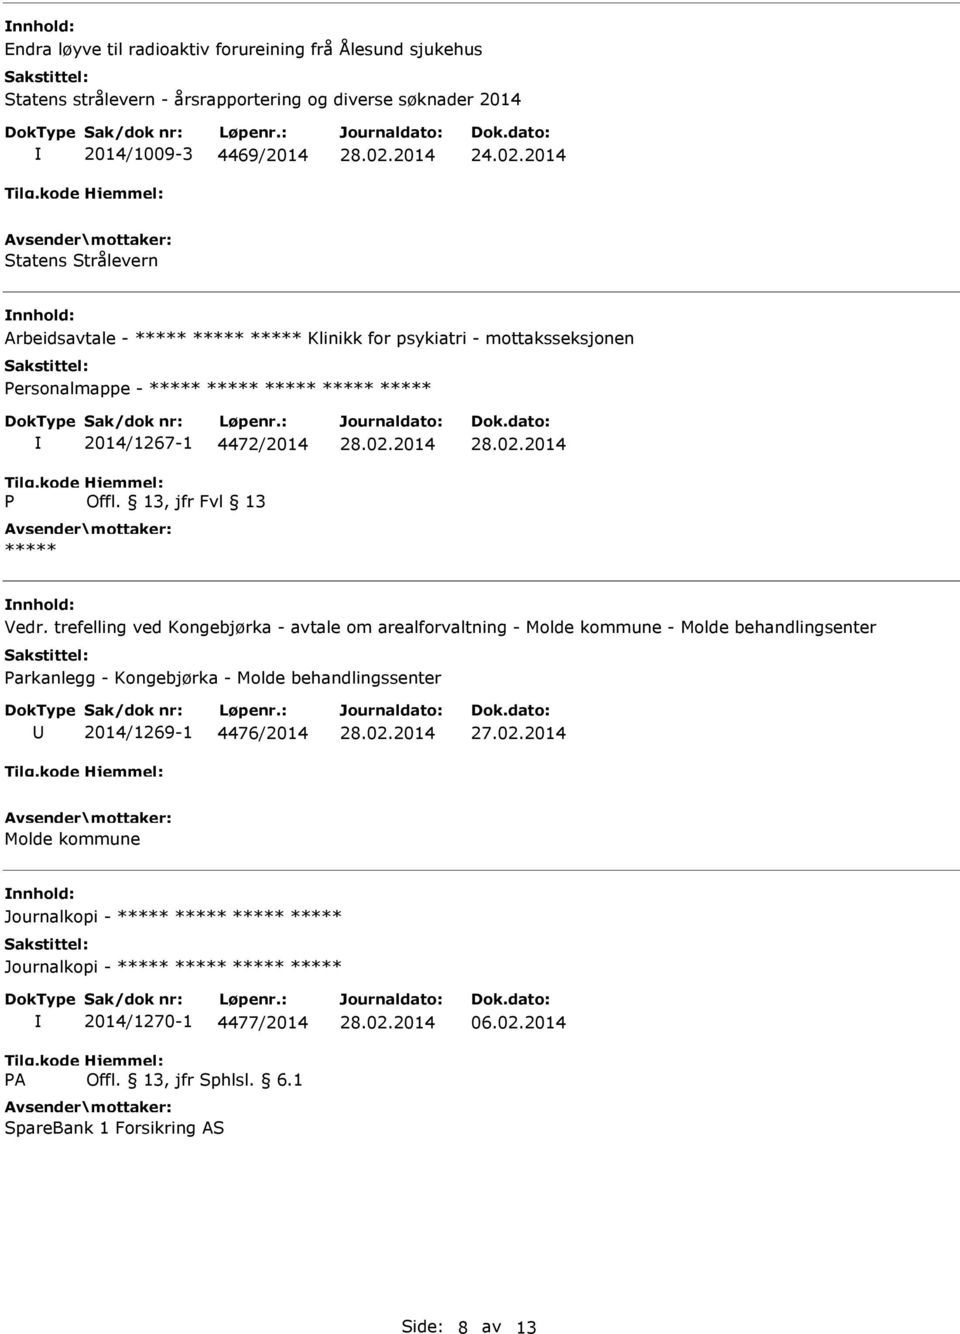 trefelling ved Kongebjørka - avtale om arealforvaltning - Molde kommune - Molde behandlingsenter arkanlegg - Kongebjørka - Molde